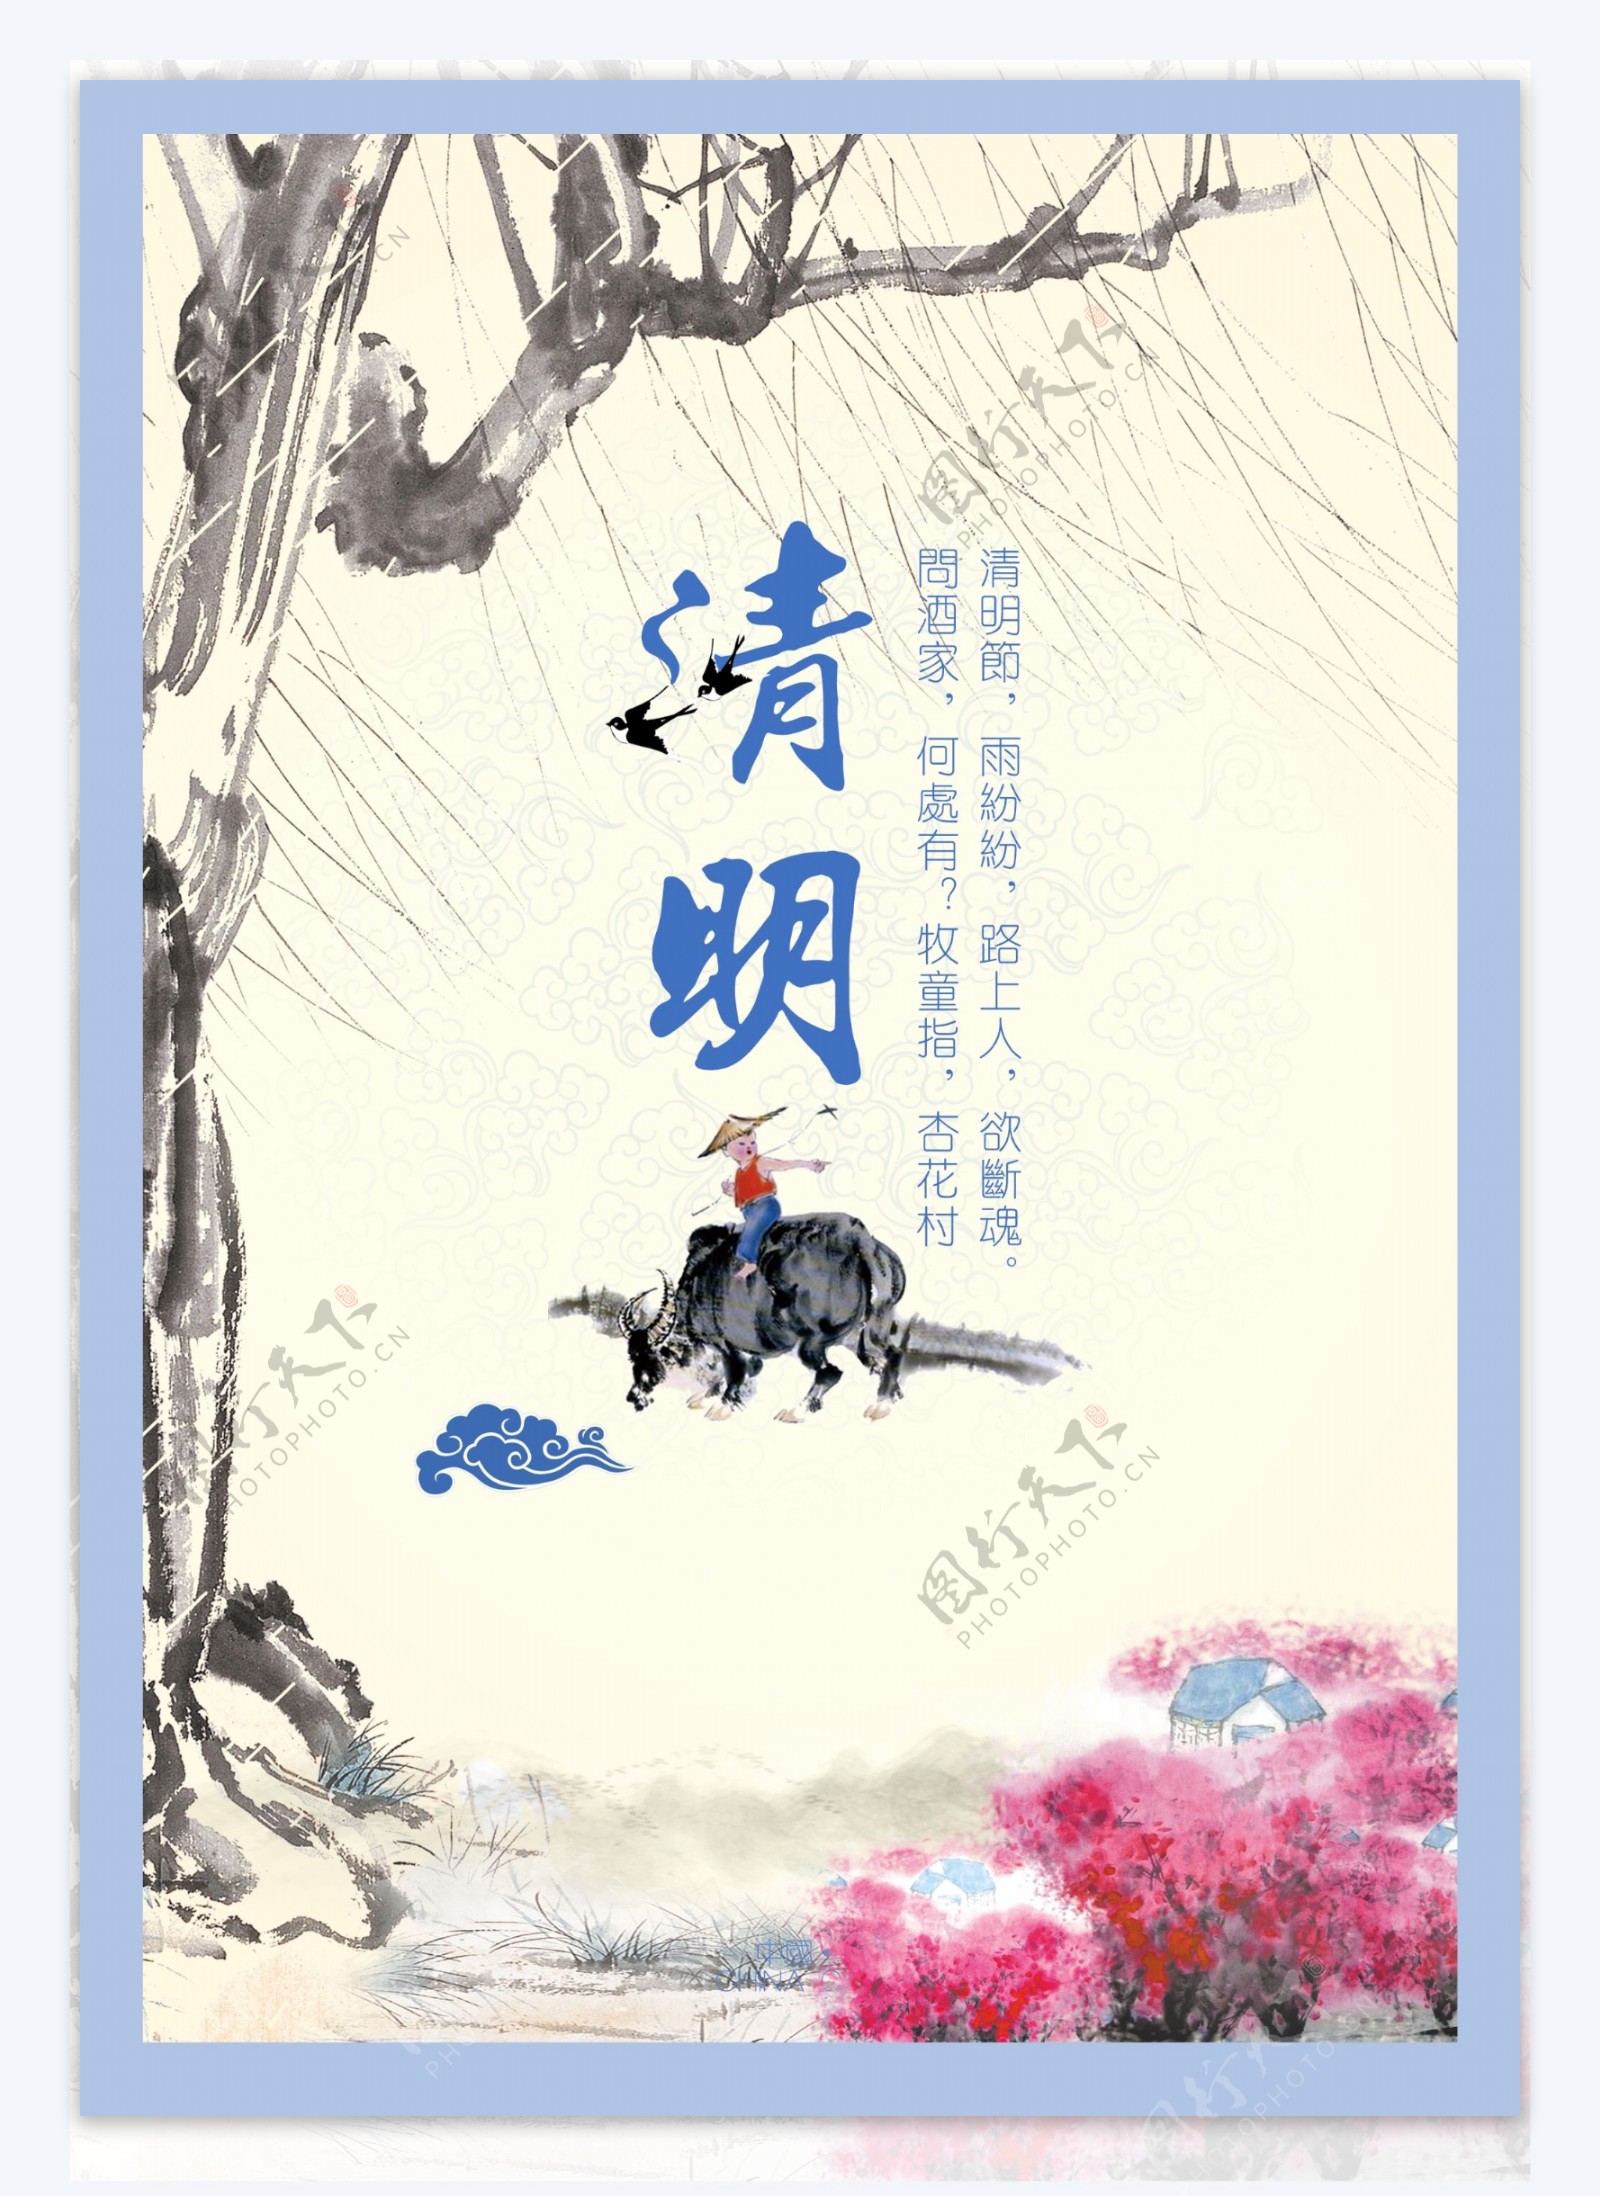 中国风清明节促销活动海报